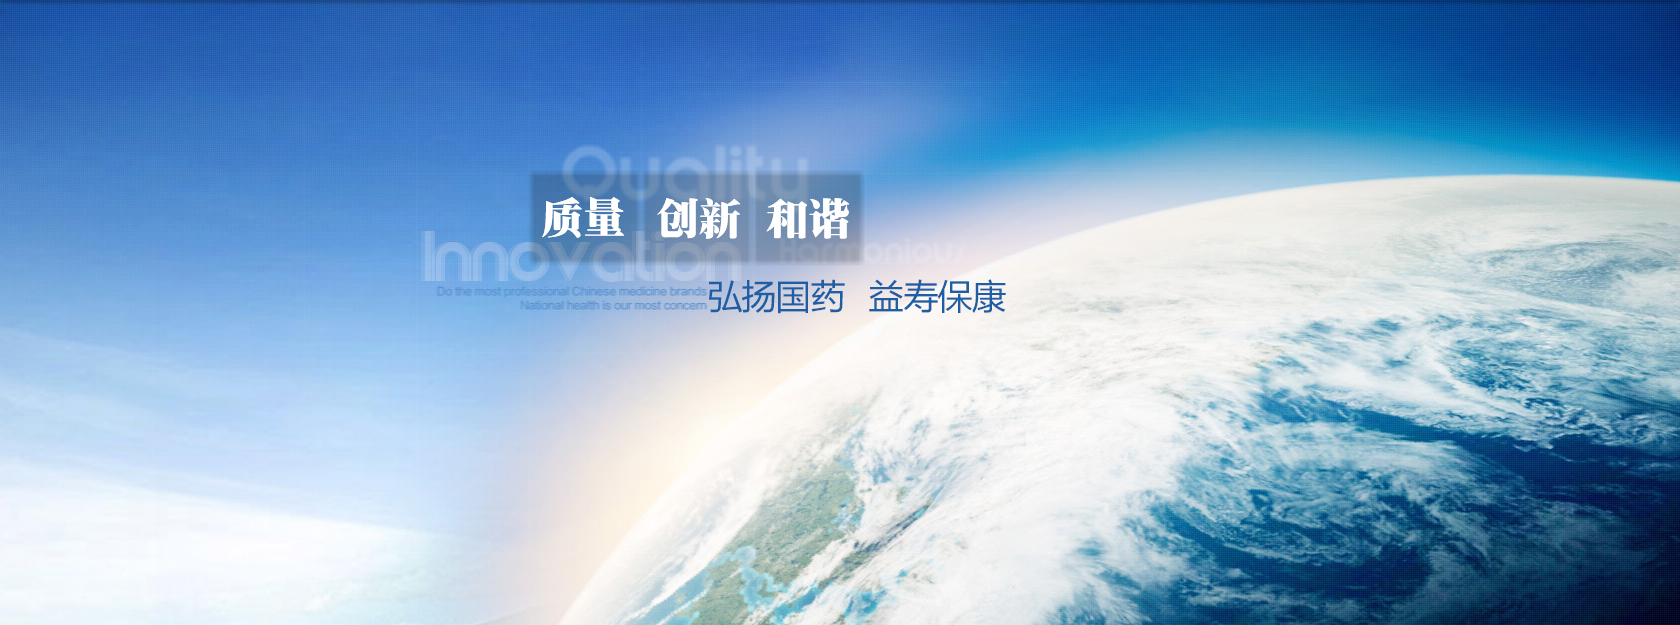 关于当前产品008网投·(中国)官方网站的成功案例等相关图片